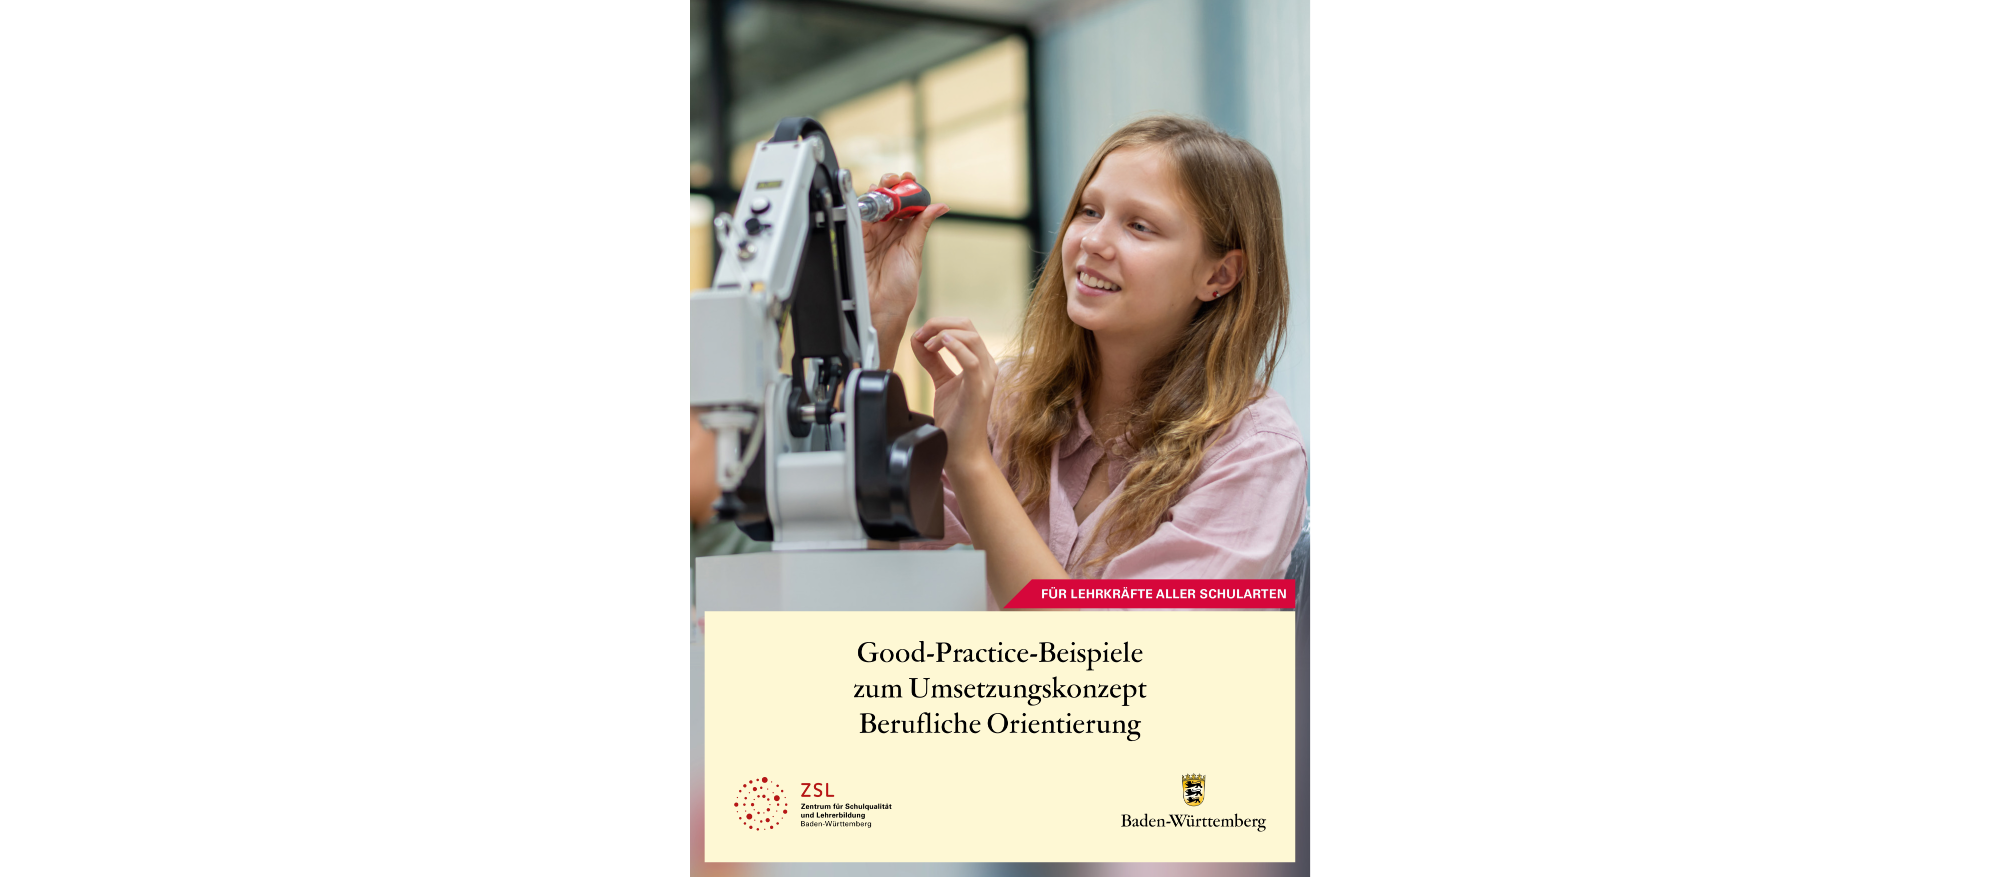 Link zu Broschüre Good-Practice-Beispiele zum Umsetzungskonzept Berufliche Orientierung